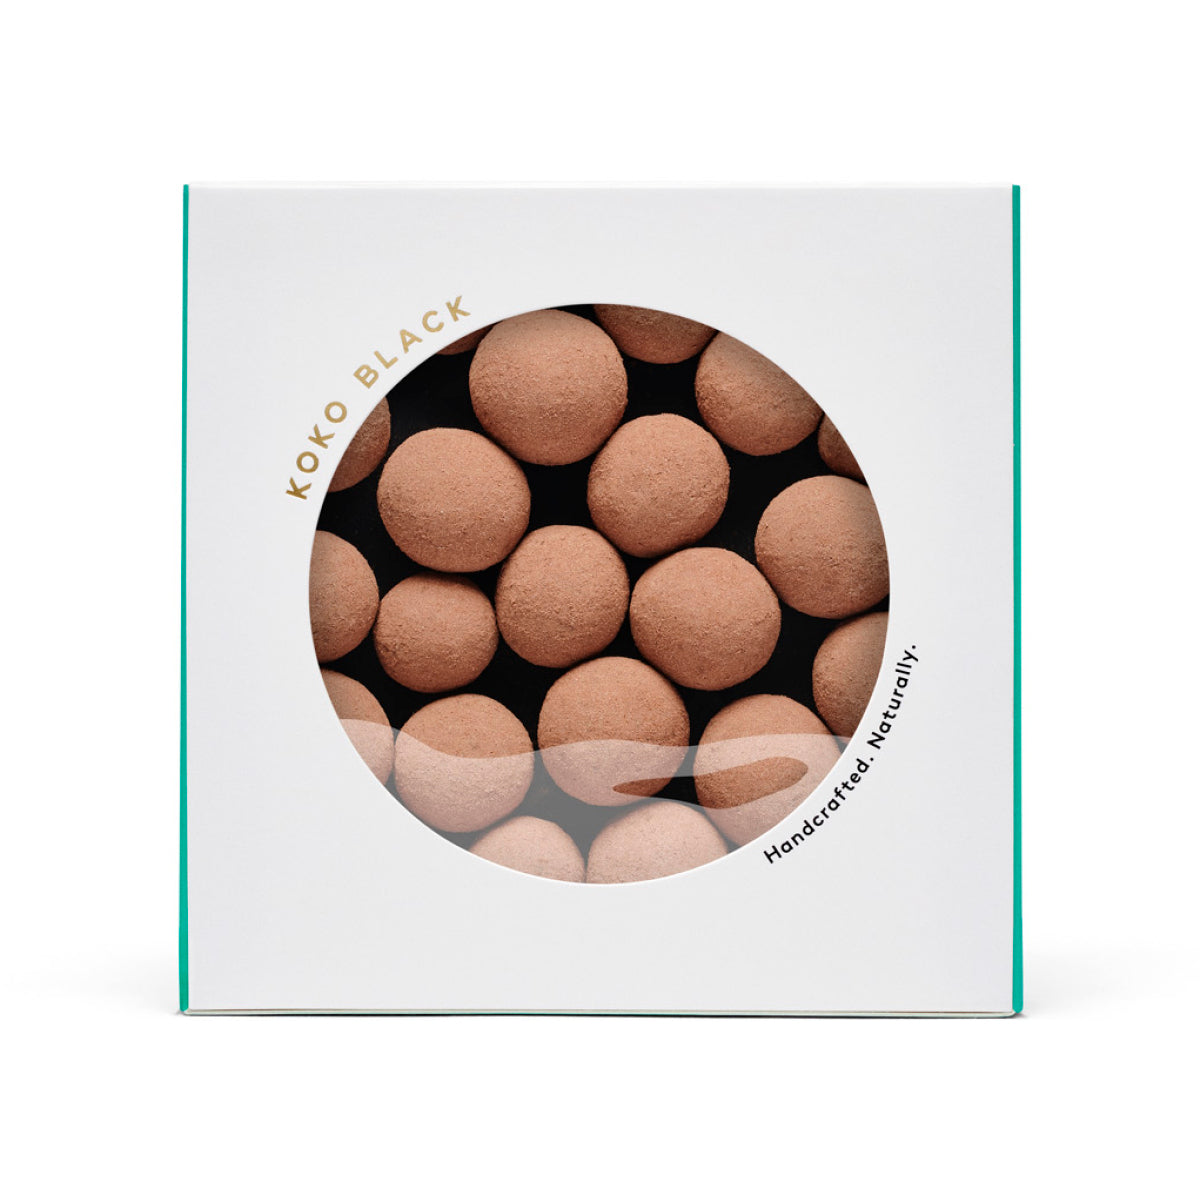 Boxed round chocolate